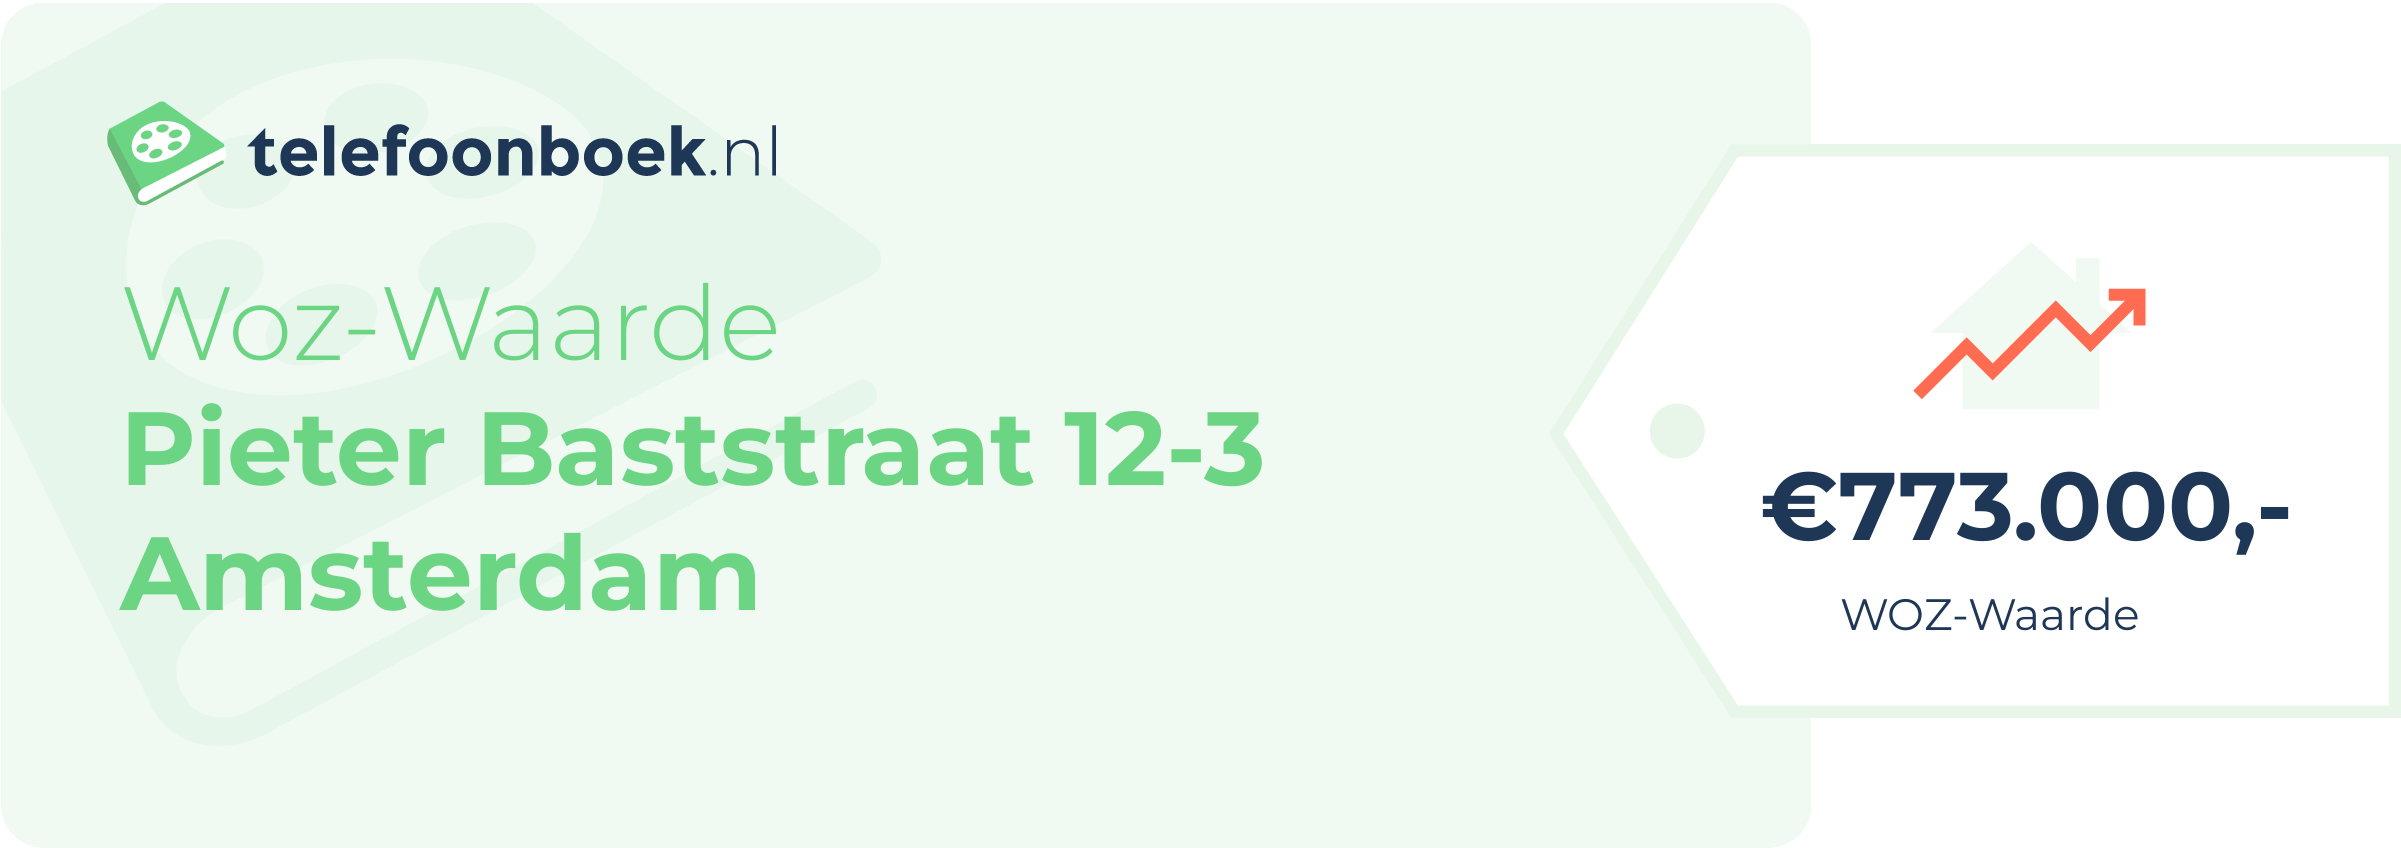 WOZ-waarde Pieter Baststraat 12-3 Amsterdam